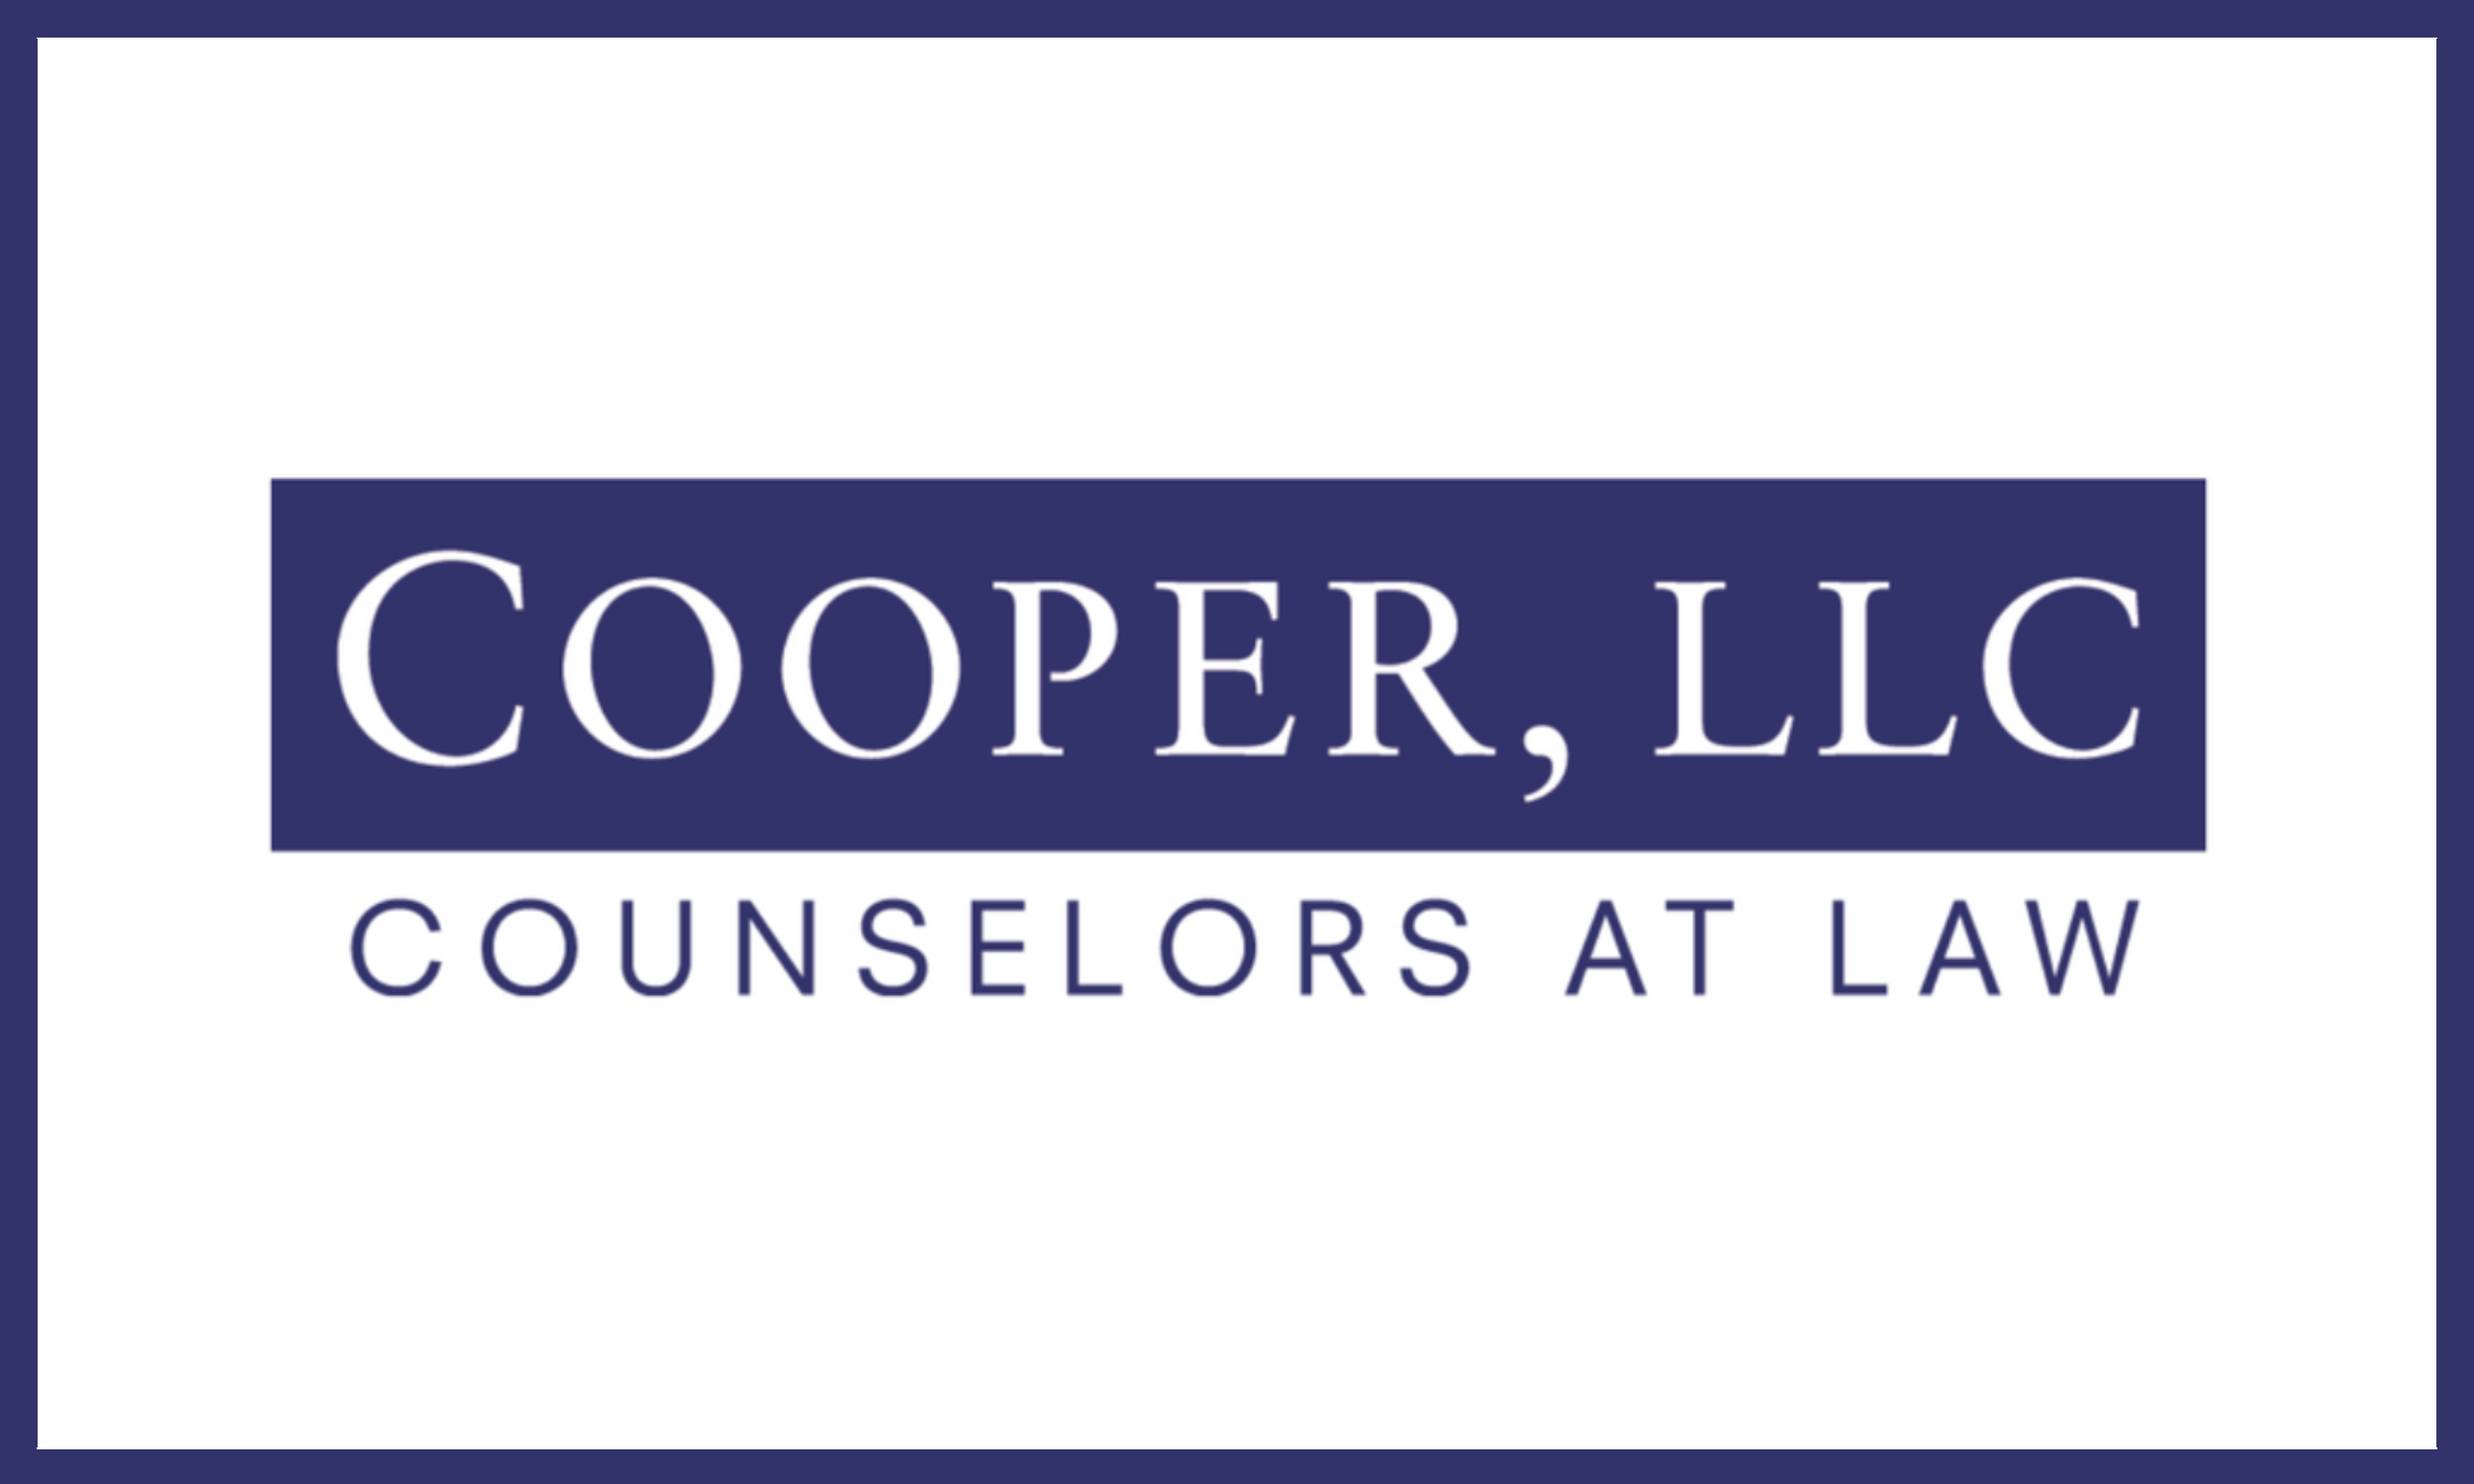 Cooper, LLC